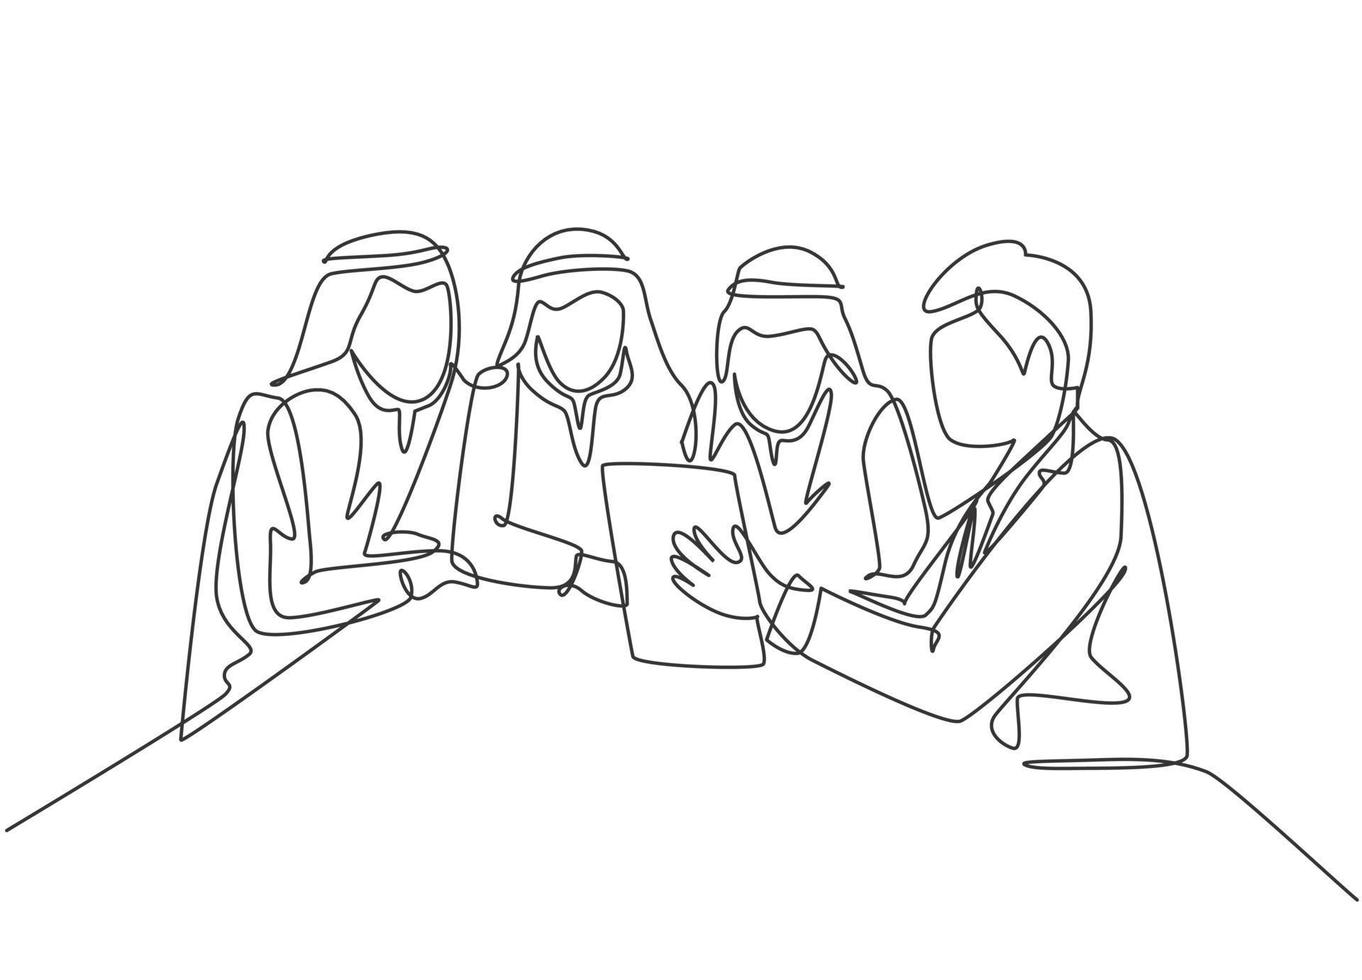 één enkele lijntekening van jonge gelukkige moslimzakenman en collega's die zaken bespreken. saoedi-arabië doek shmag, kandora, hoofddoek, thobe. doorlopende lijn tekenen ontwerp vectorillustratie vector